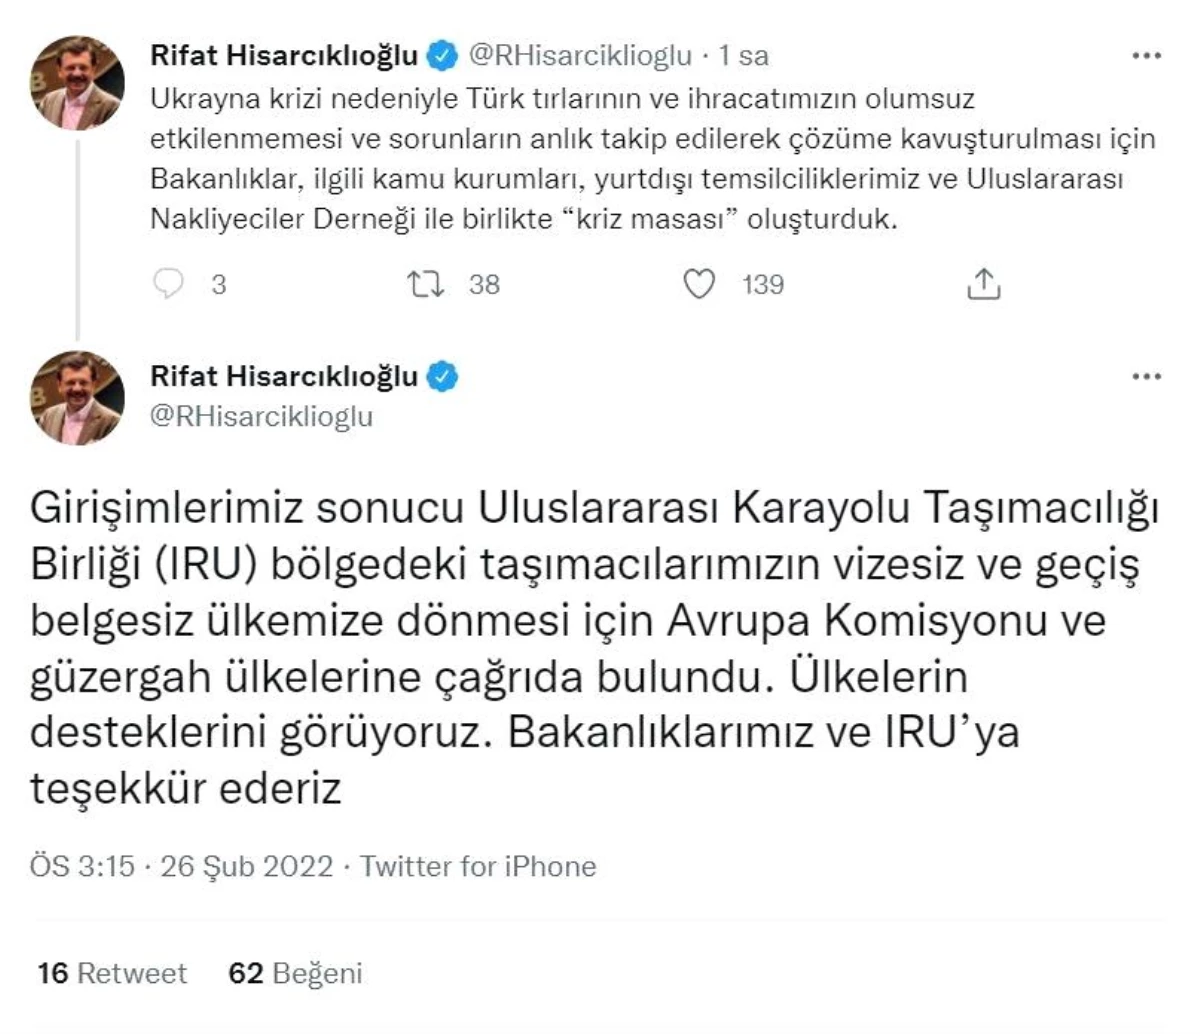 Hisacıklıoğlu: "Türk tırlarının olumsuz etkilenmemesi için kriz masası oluşturduk"